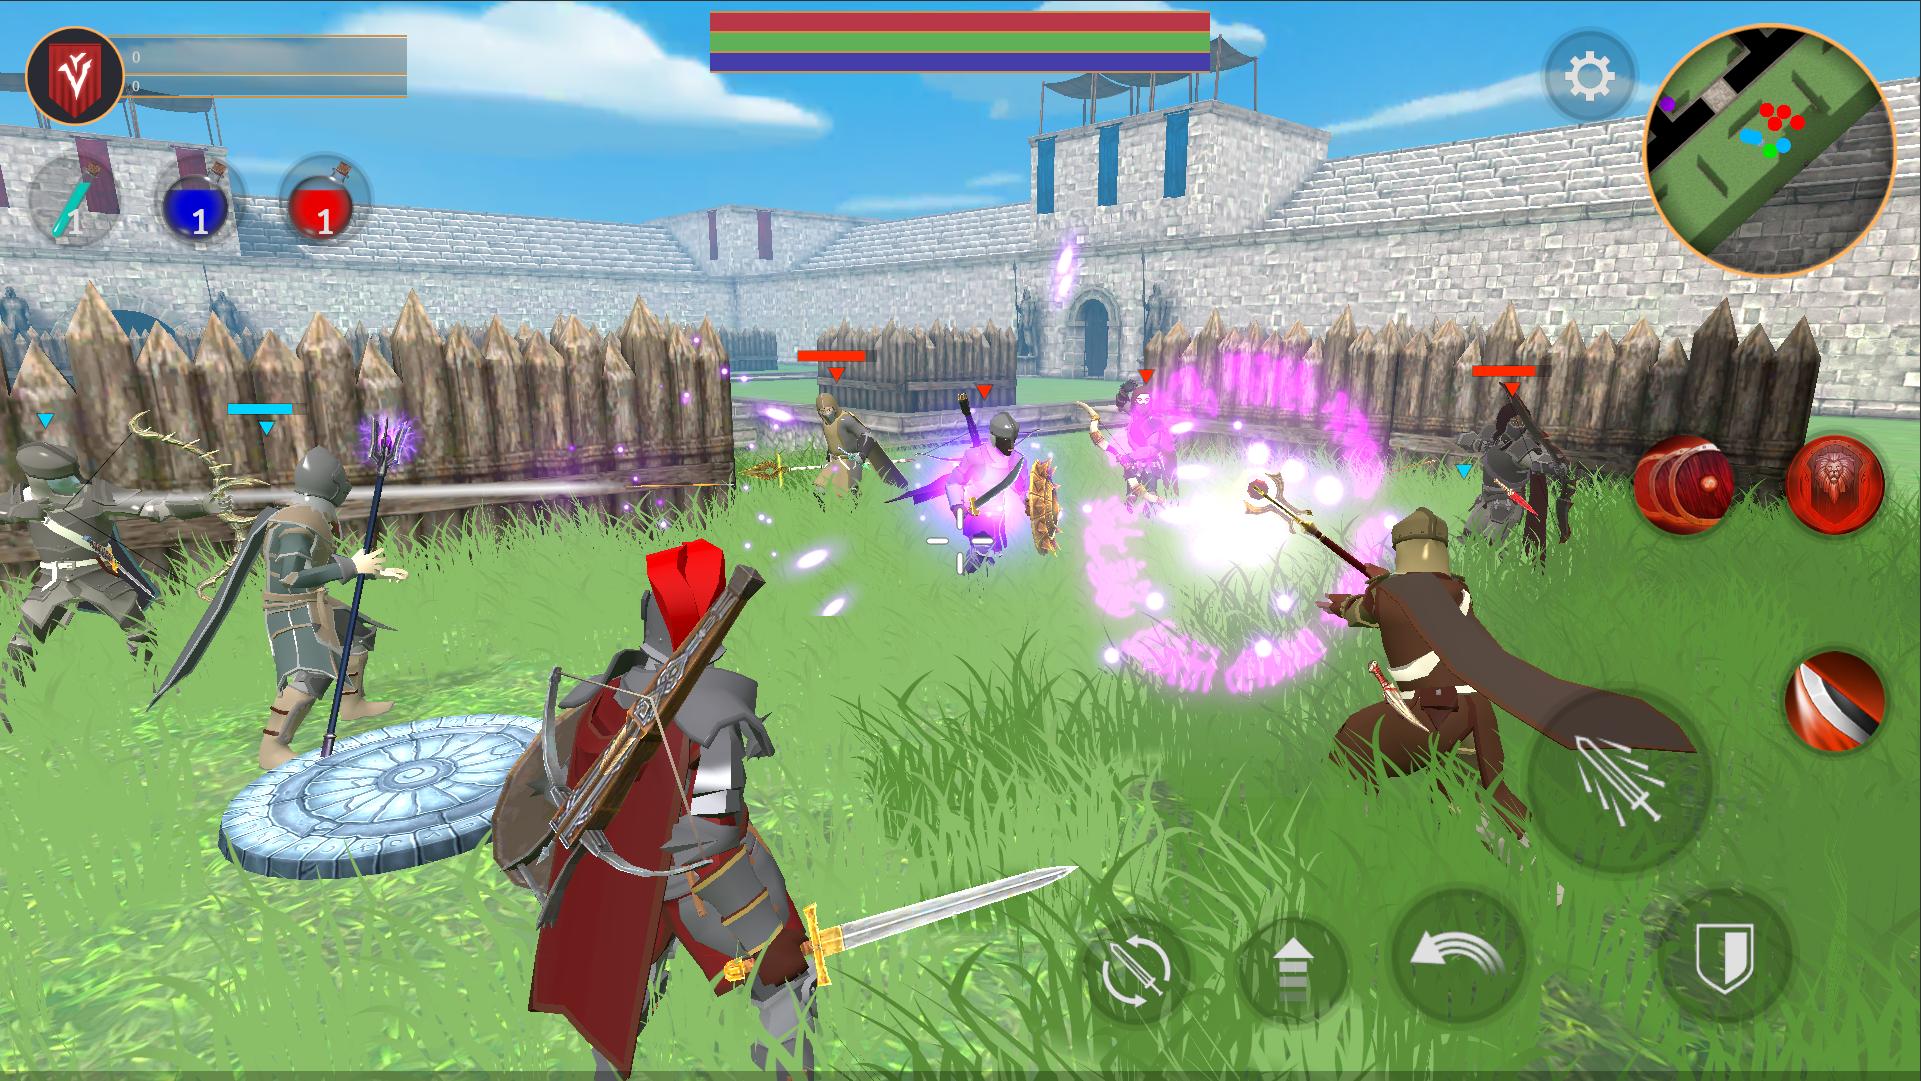 Combat Magic: Spells and Swords 0.21.64a Screenshot 6